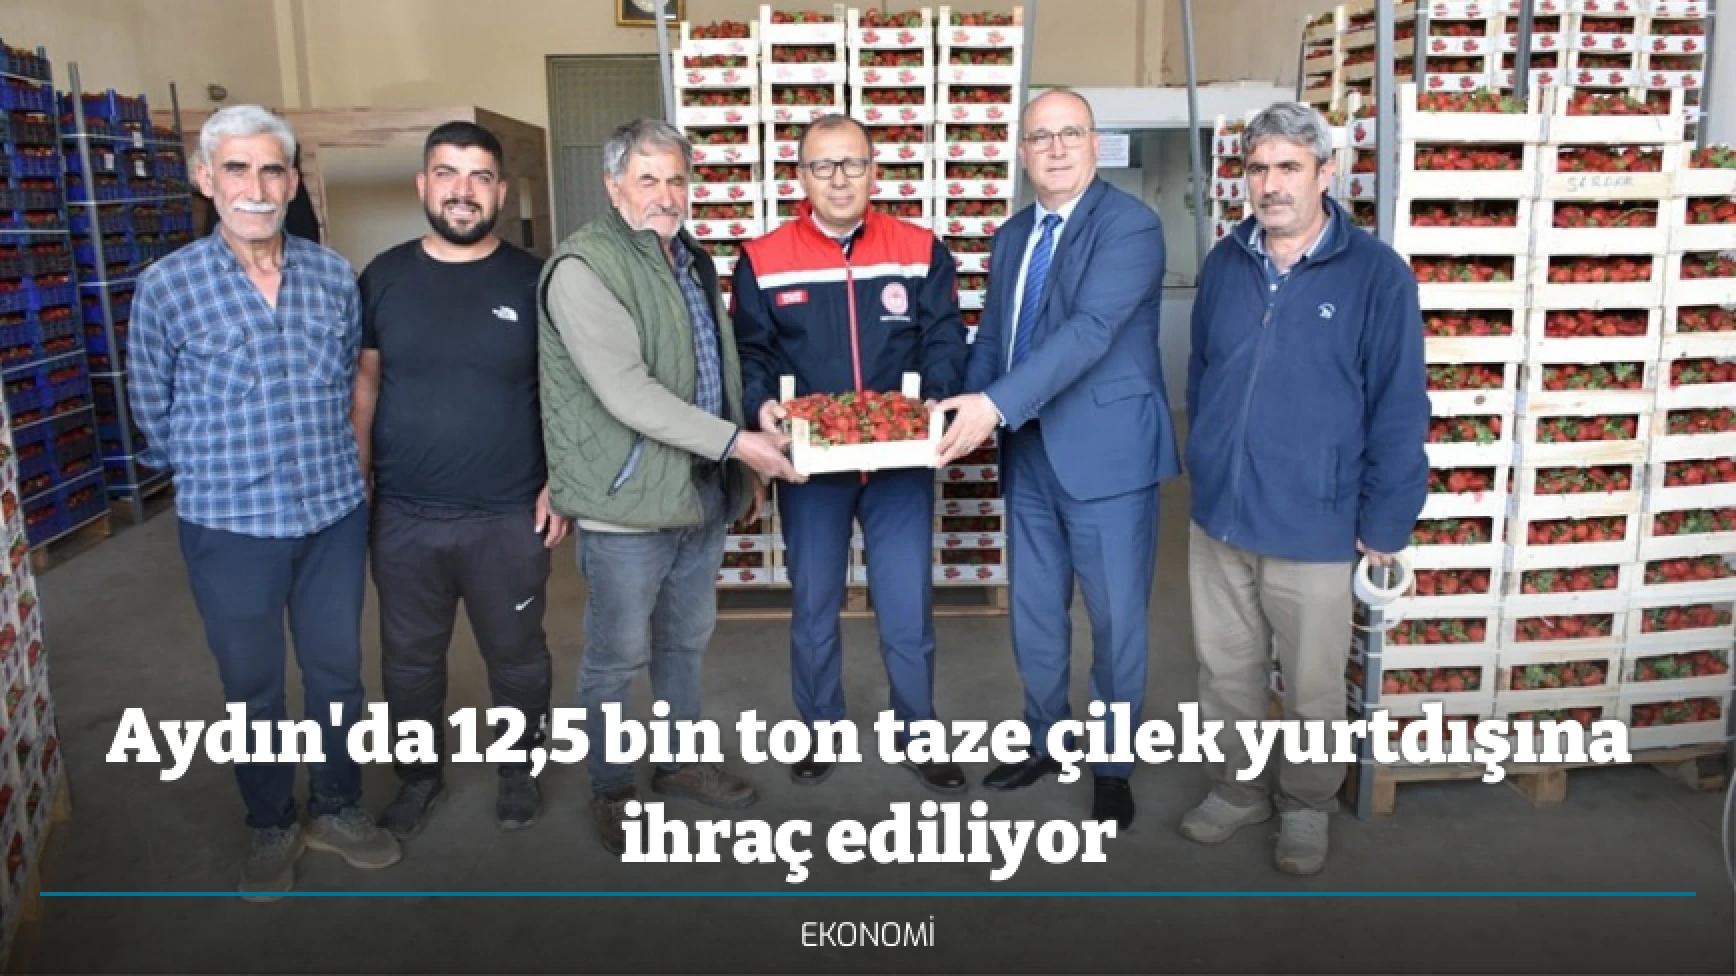 Aydın'da 12,5 bin ton taze çilek yurtdışına ihraç ediliyor